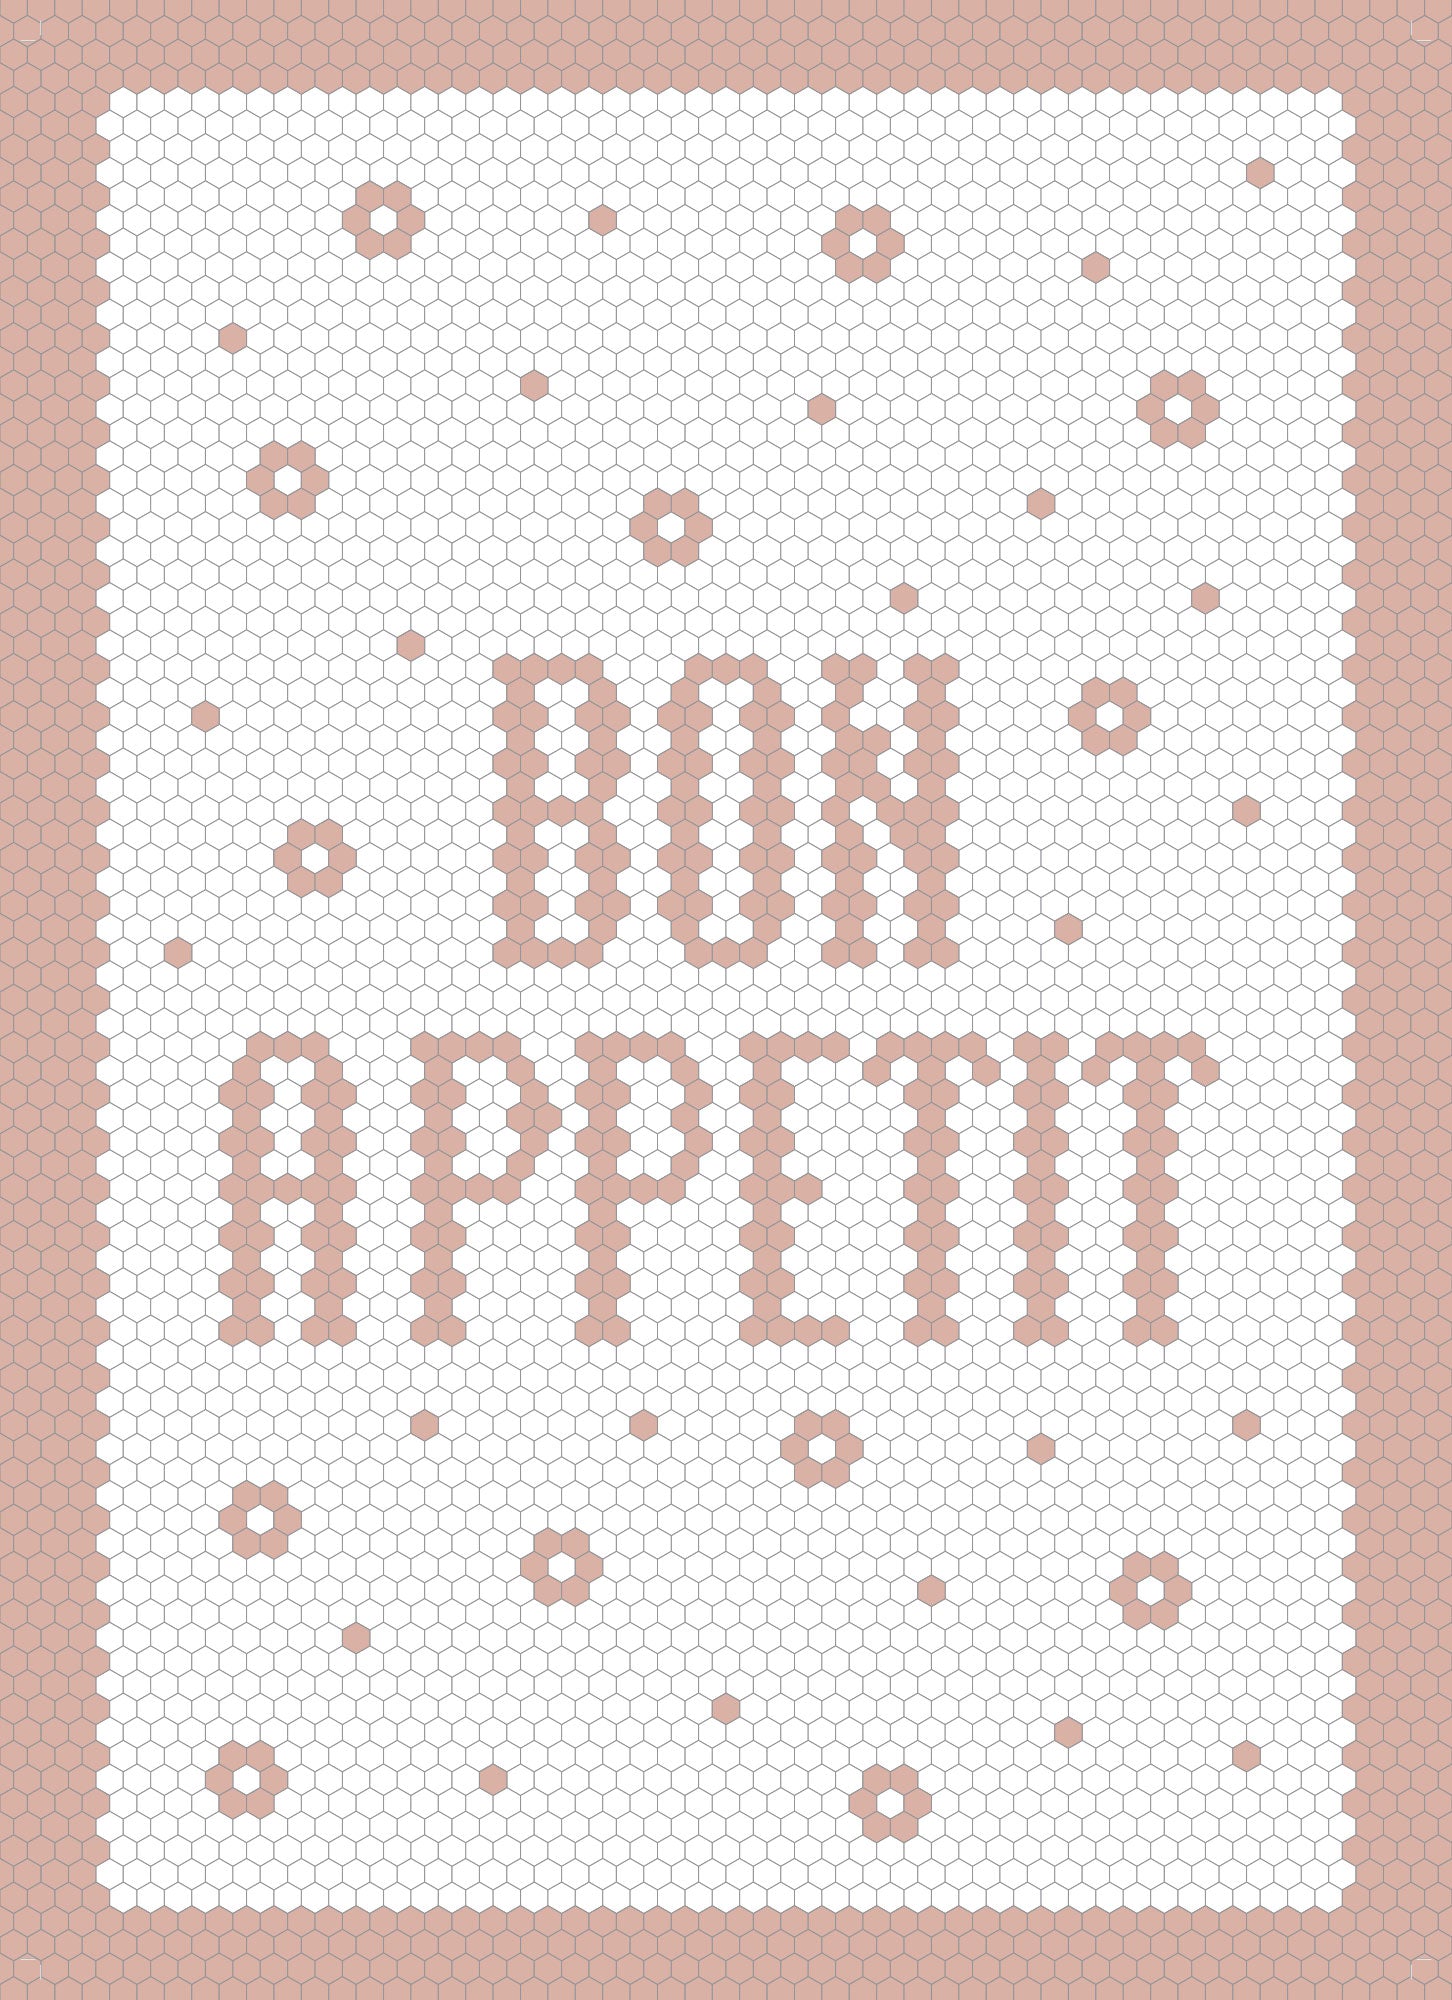 Bon Appetit Blush - Linge a vaisselle / Tea Towel